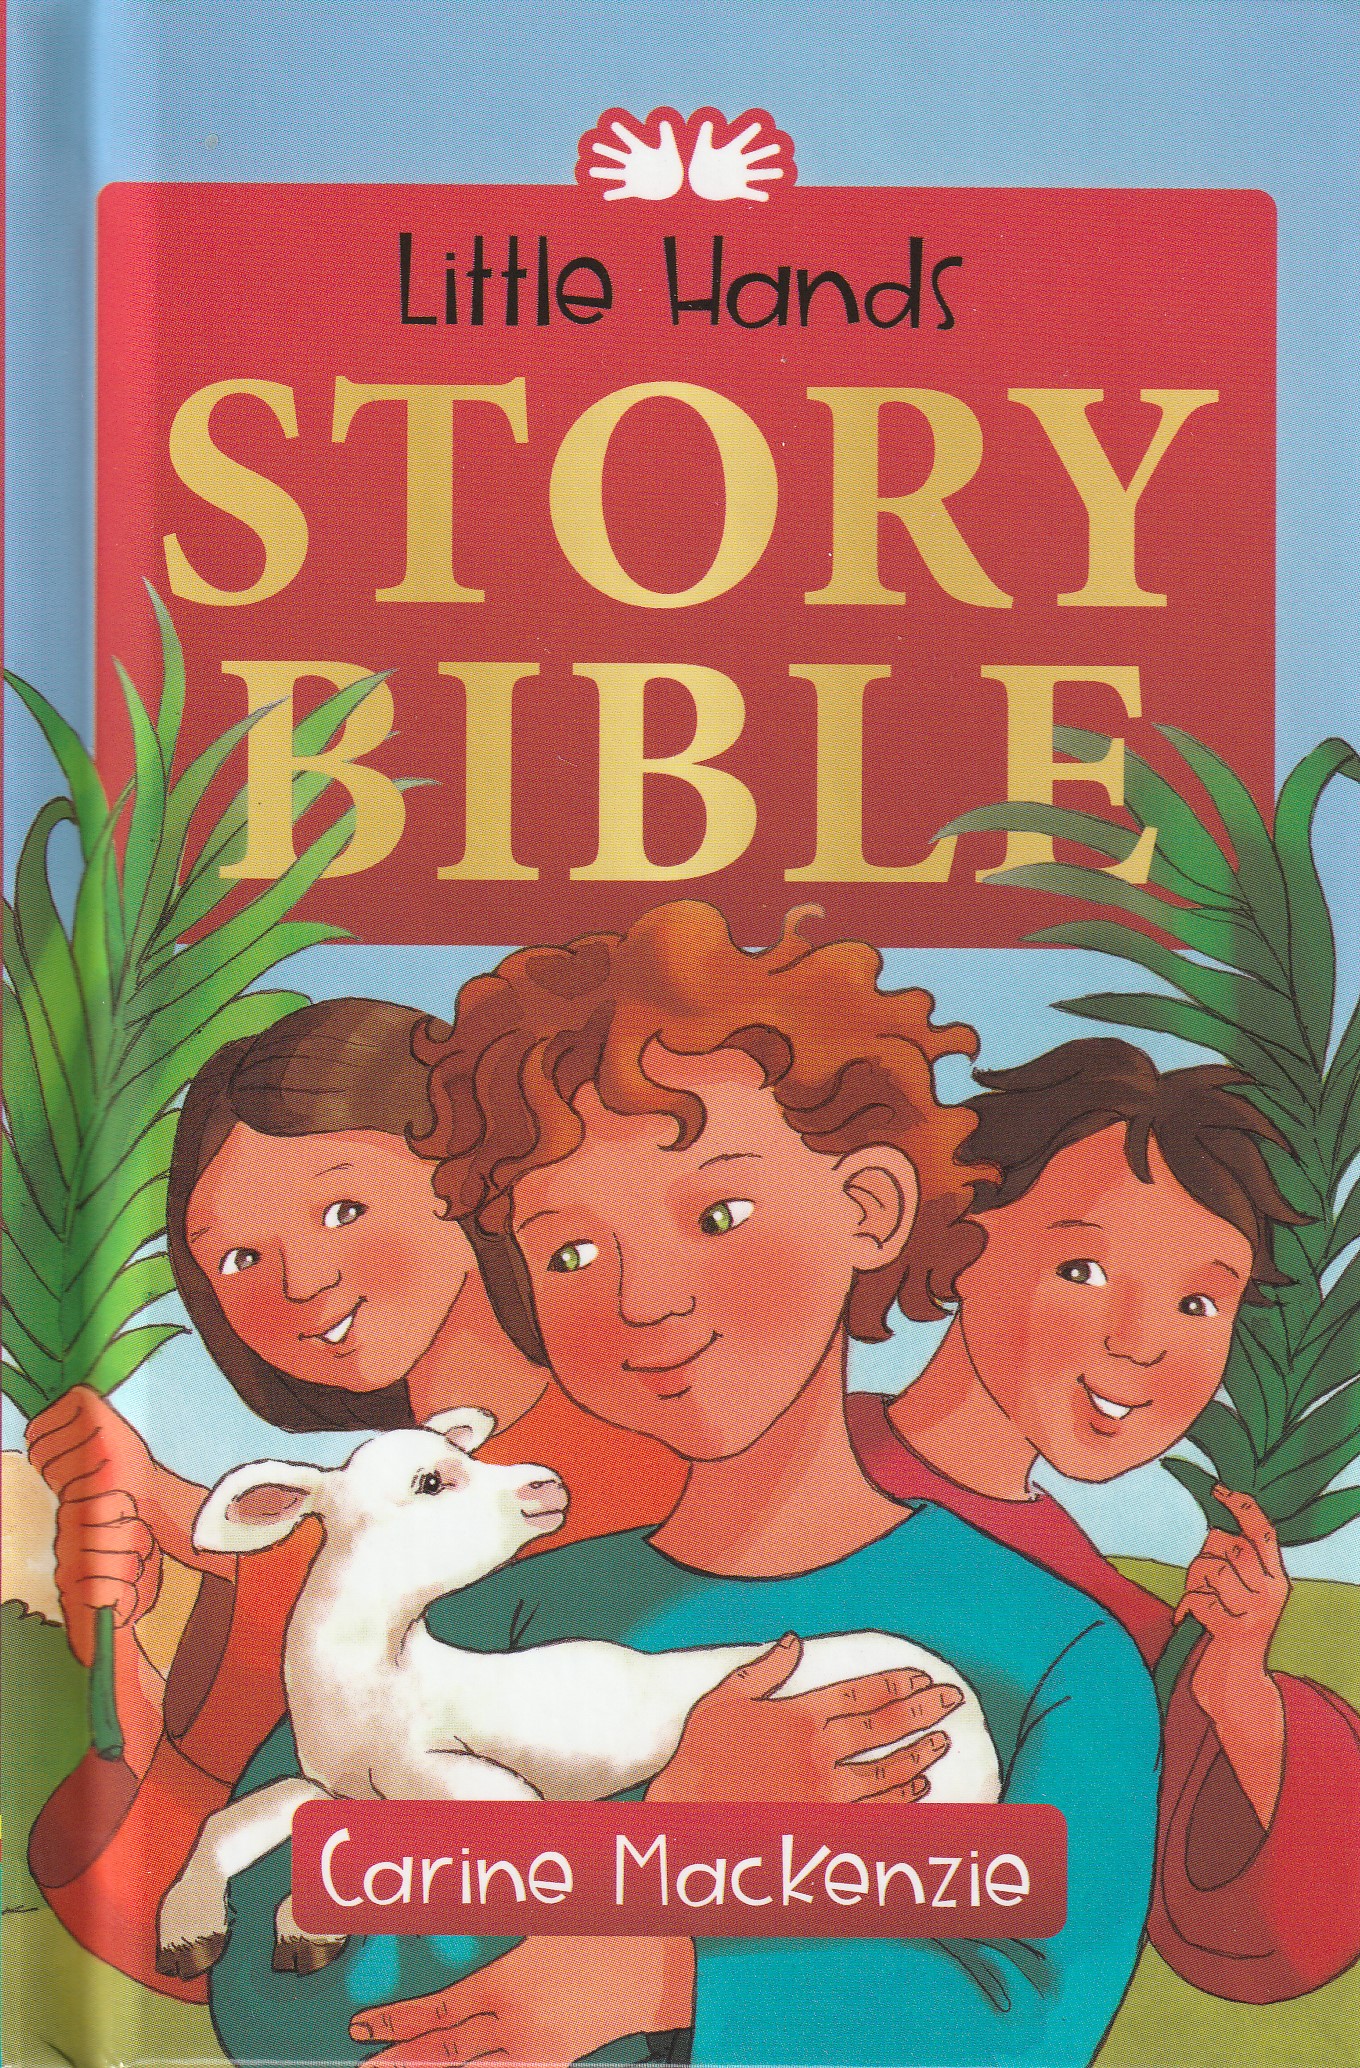 Little Hands Story Bible